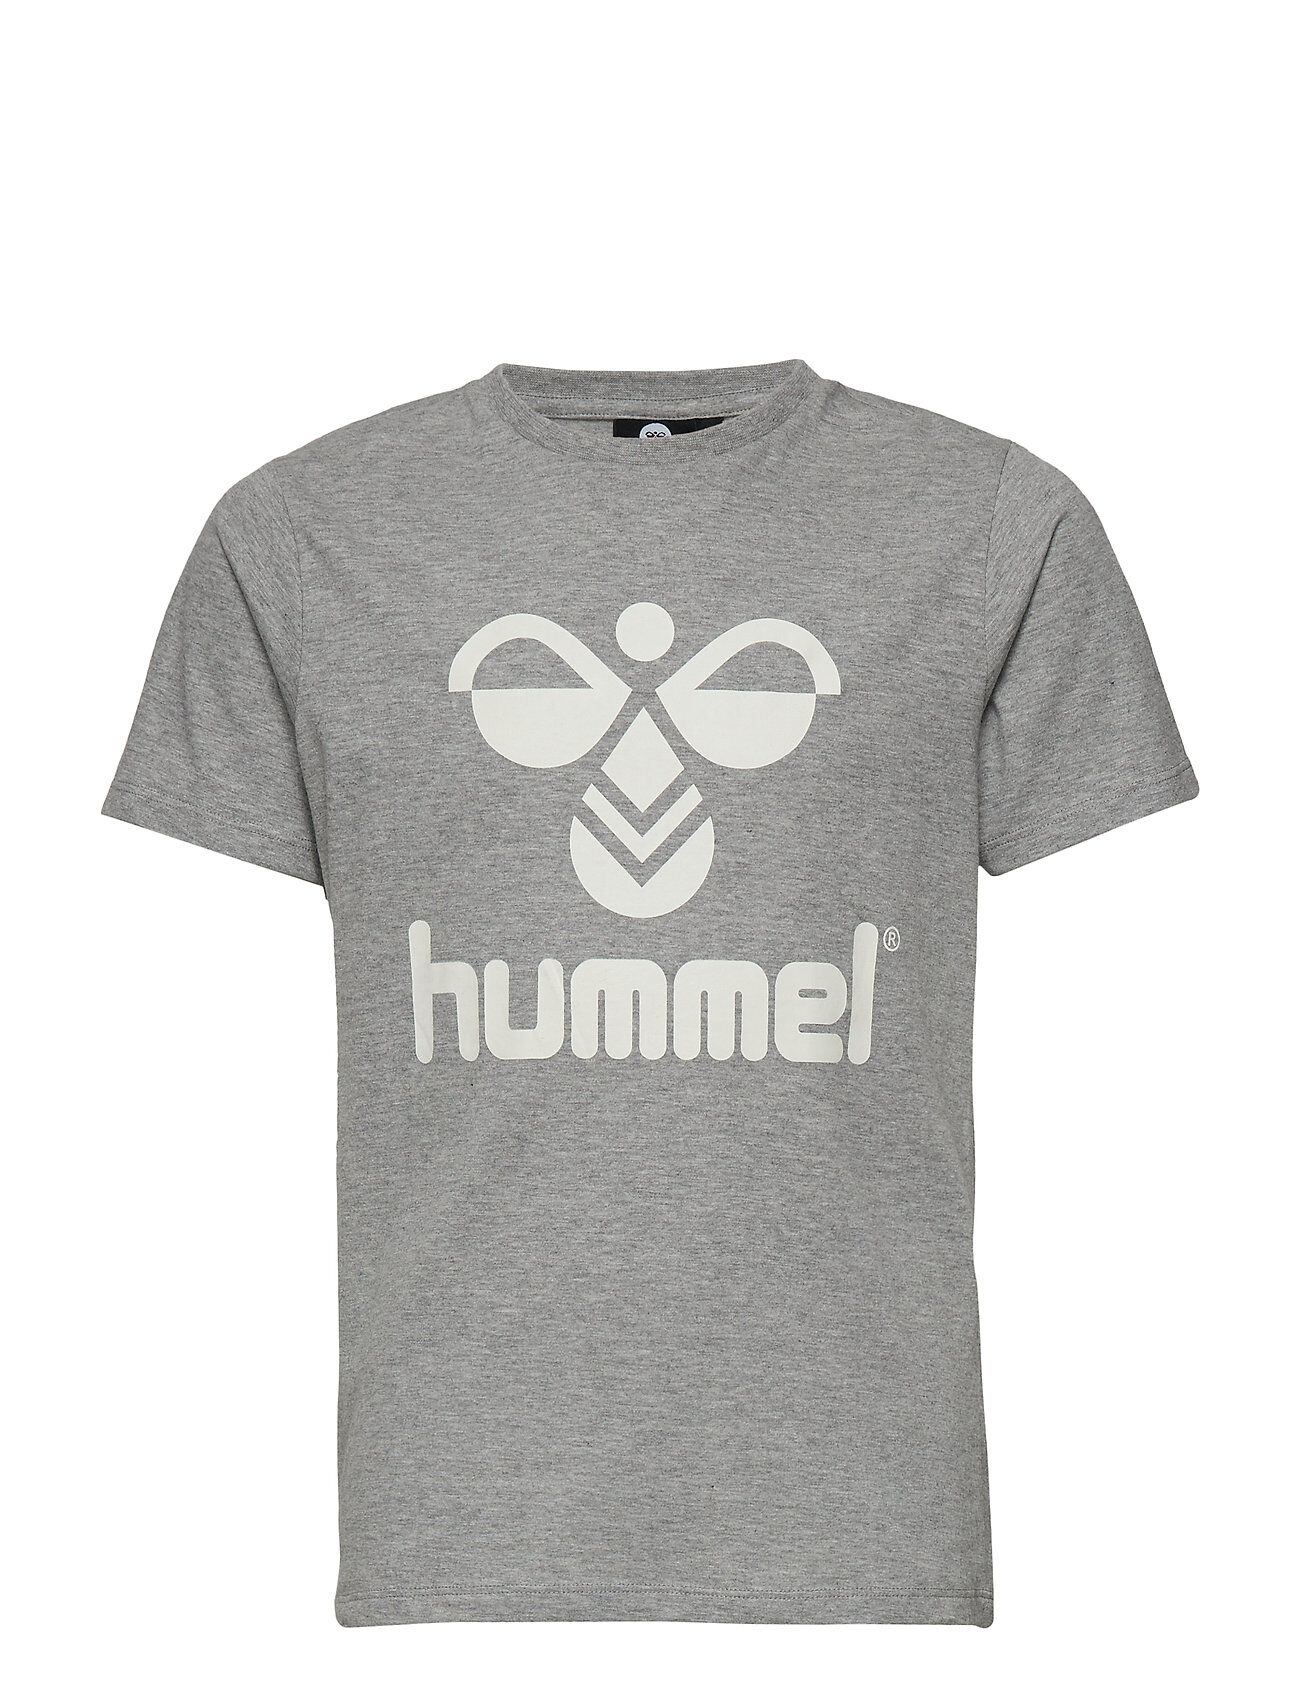 Hummel Hmltres T-Shirt S/S T-shirts Short-sleeved Grå Hummel